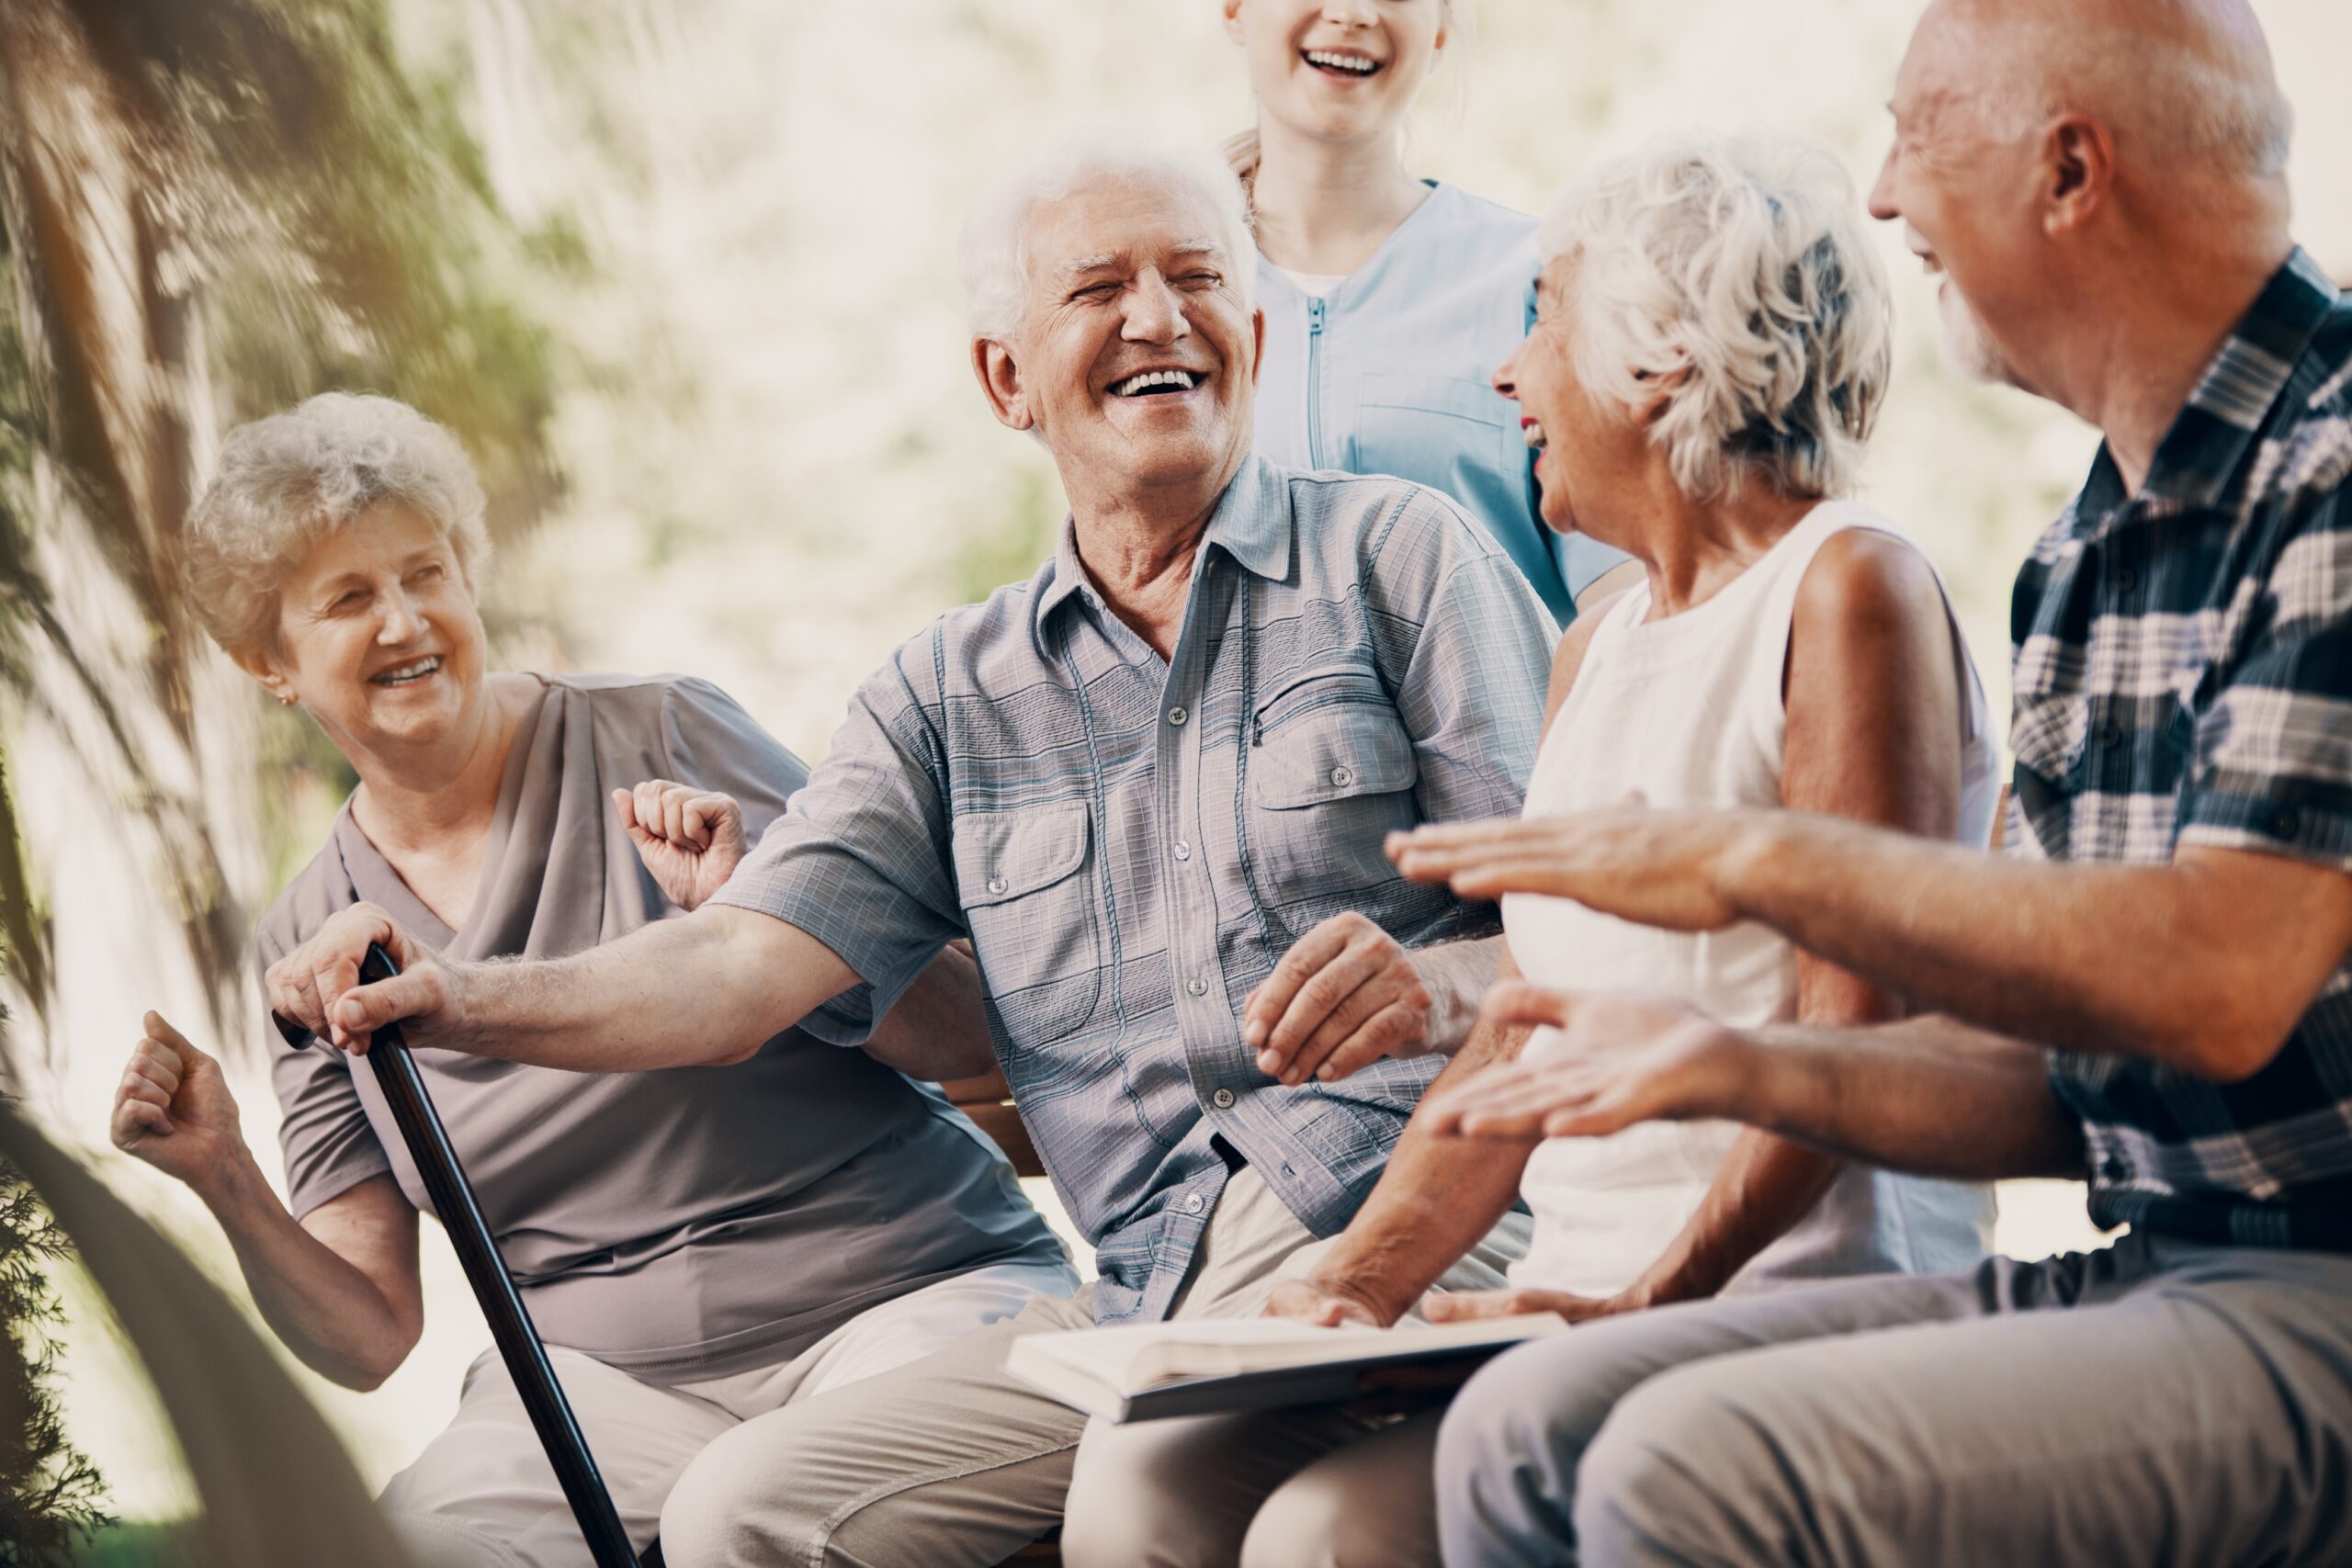 Keeping An Active Social Life May Help Seniors Live Longer